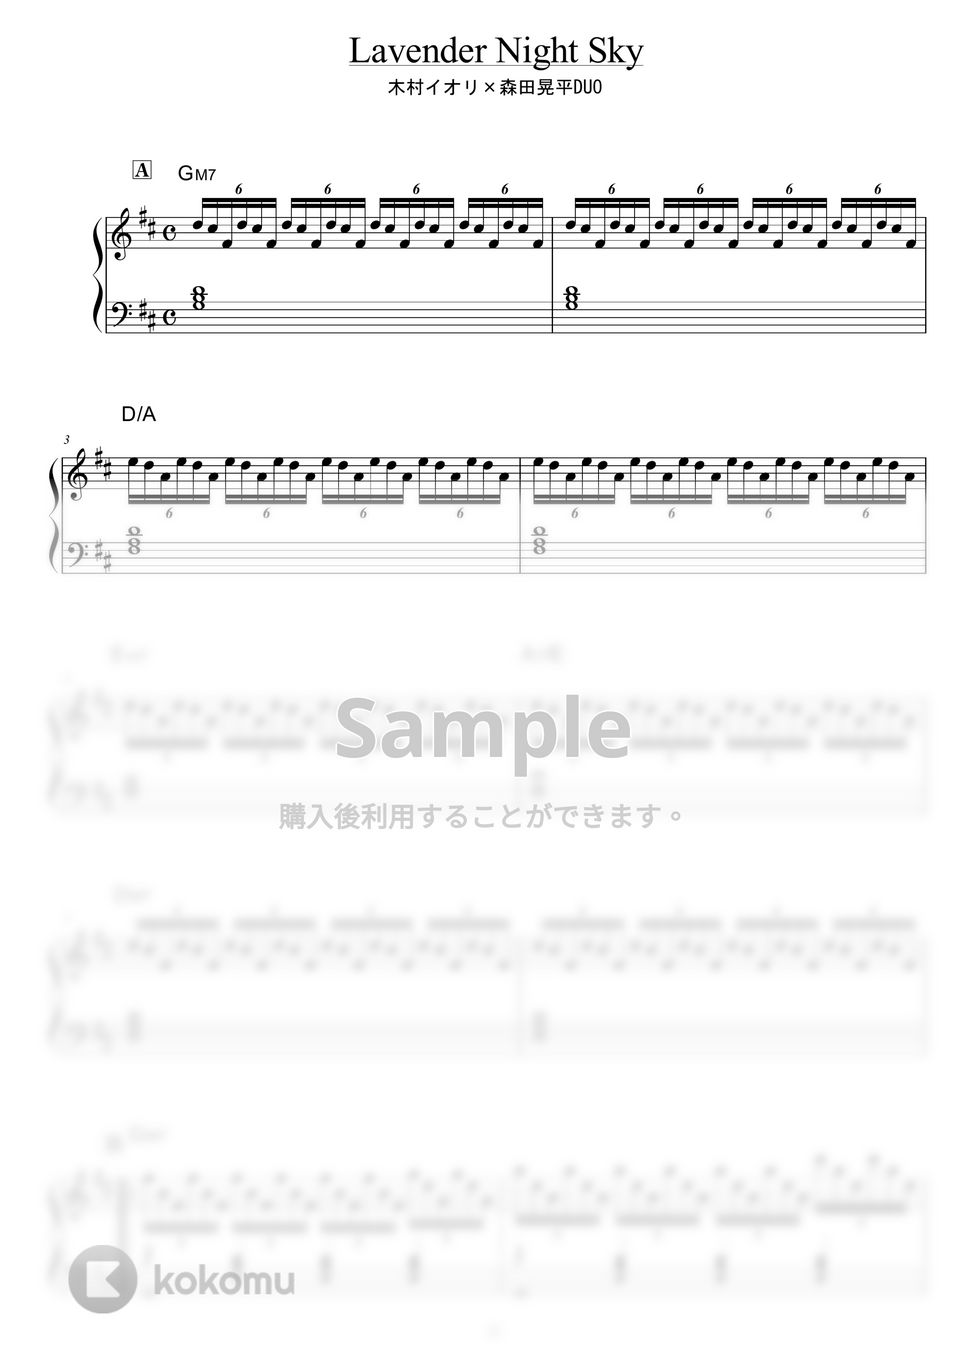 木村イオリ×森田晃平DUO - Lavender Night Sky by piano*score